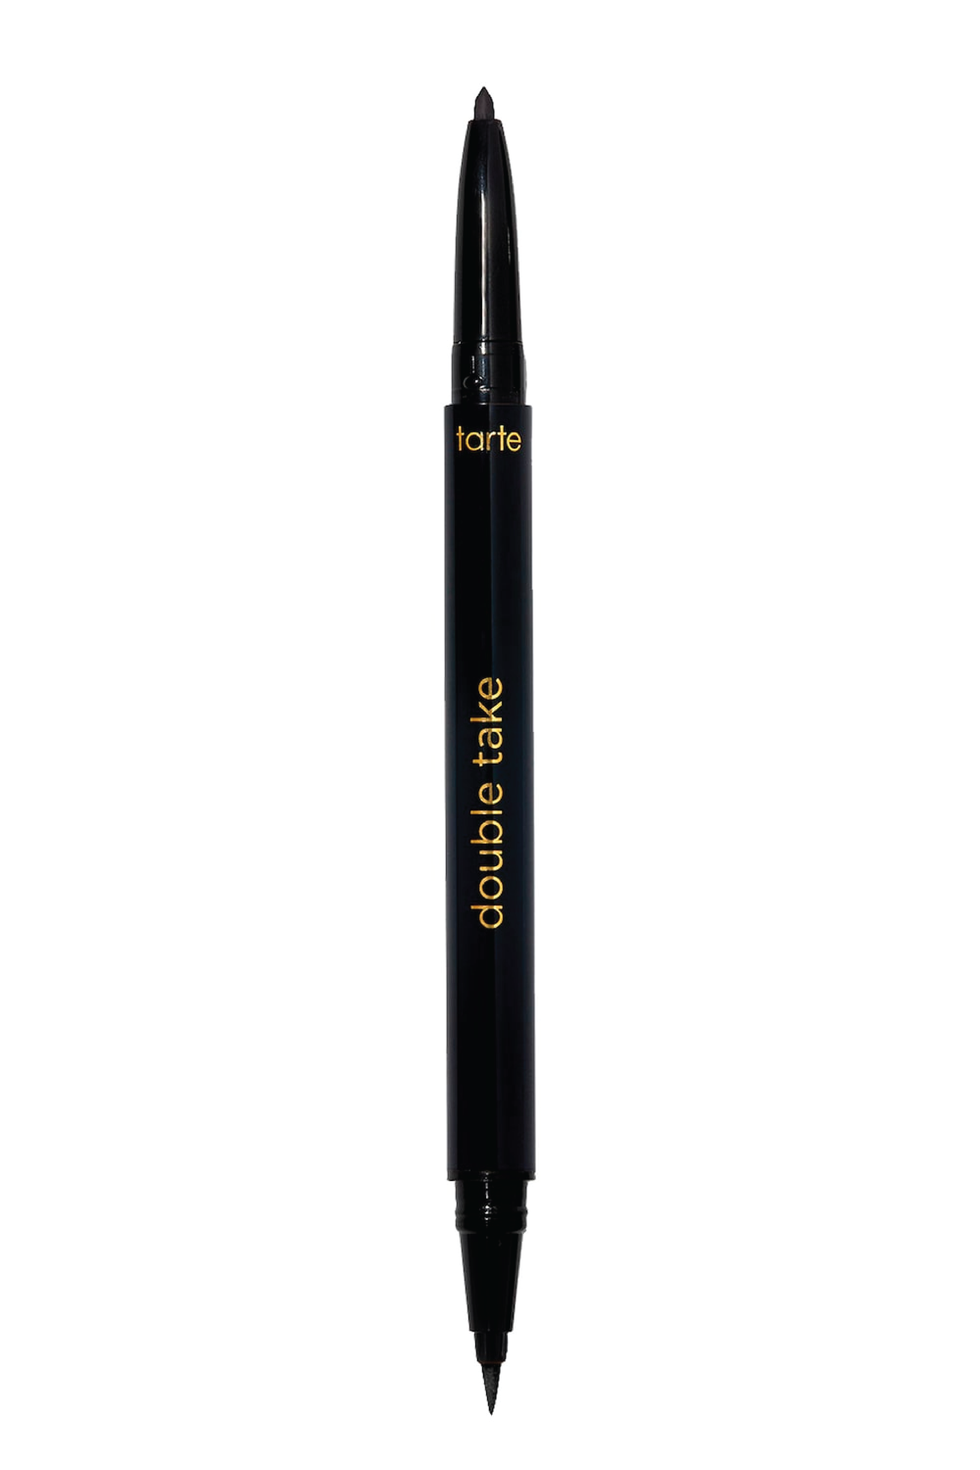 Montana Cans - Sketchliner 5-Pen Set, Black